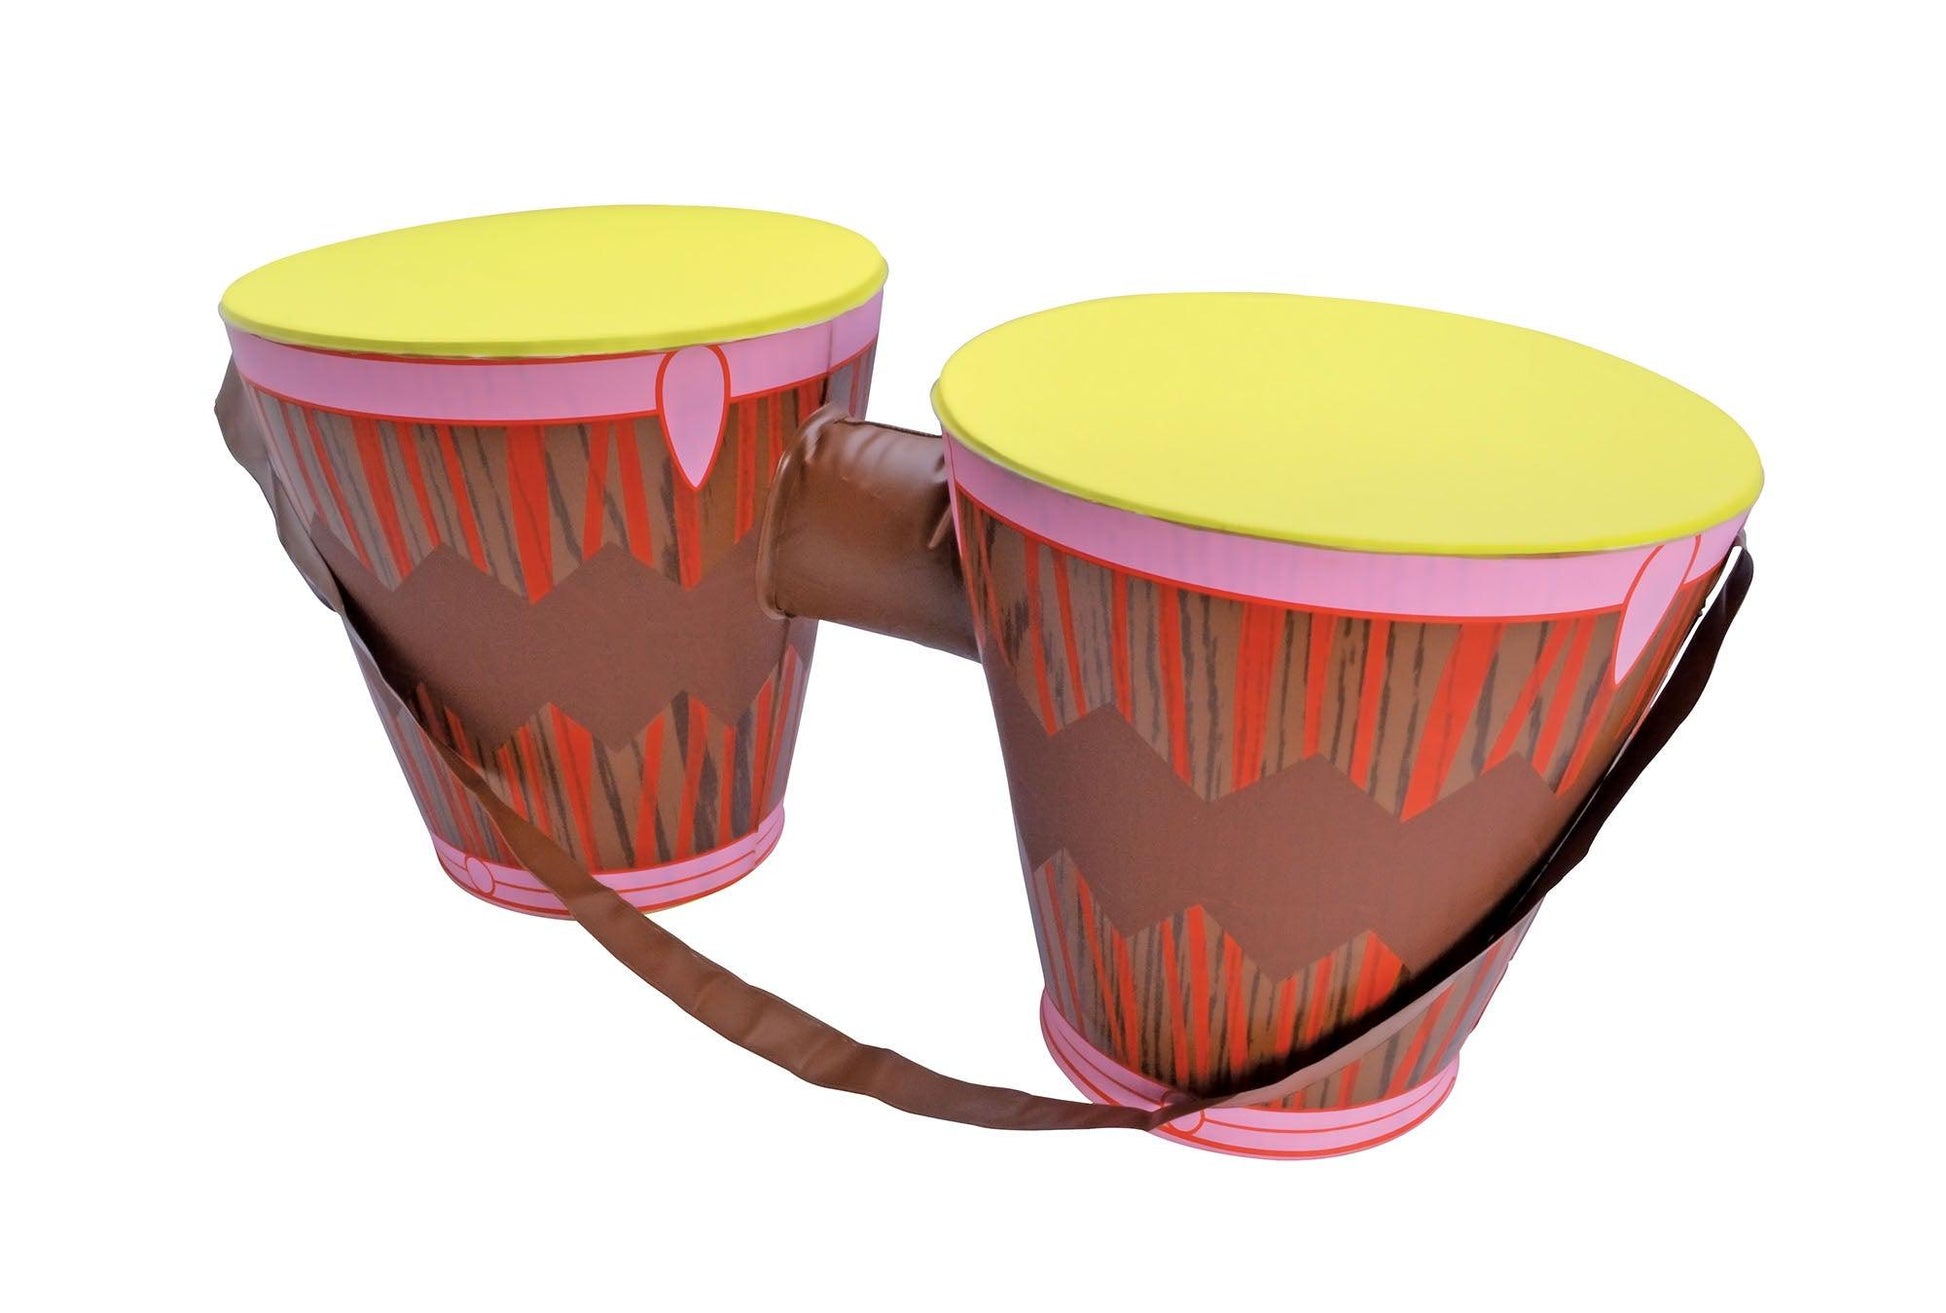 Inflatable Bongo Drums - Labreeze